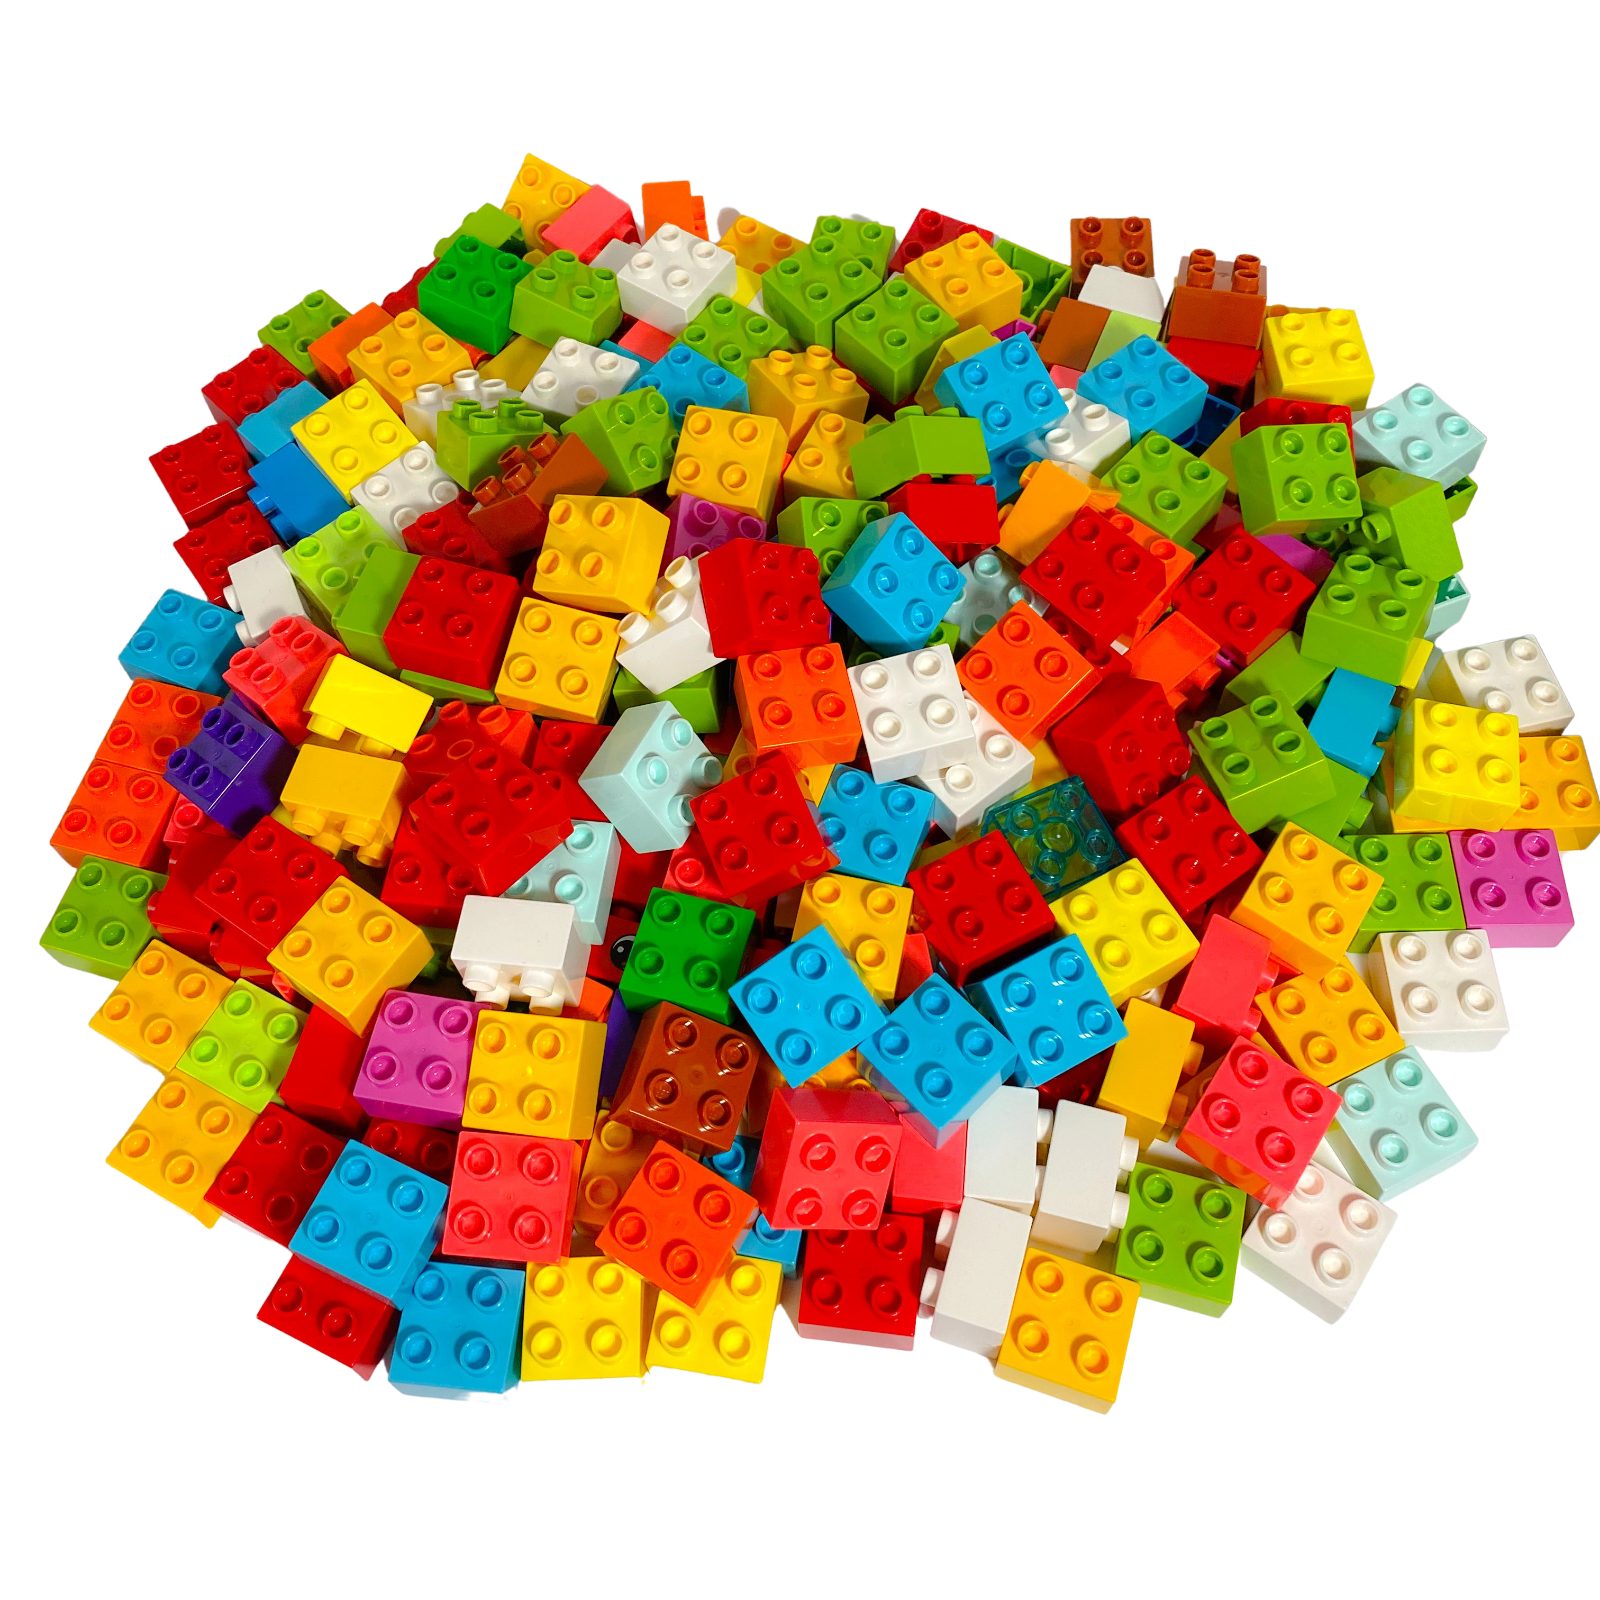 LEGO® Spielbausteine LEGO® DUPLO® 2x2 Steine Bausteine Bunt Gemischt - 3437 NEU! Menge 50x, (Creativ-Set, 50 St), Made in Europe